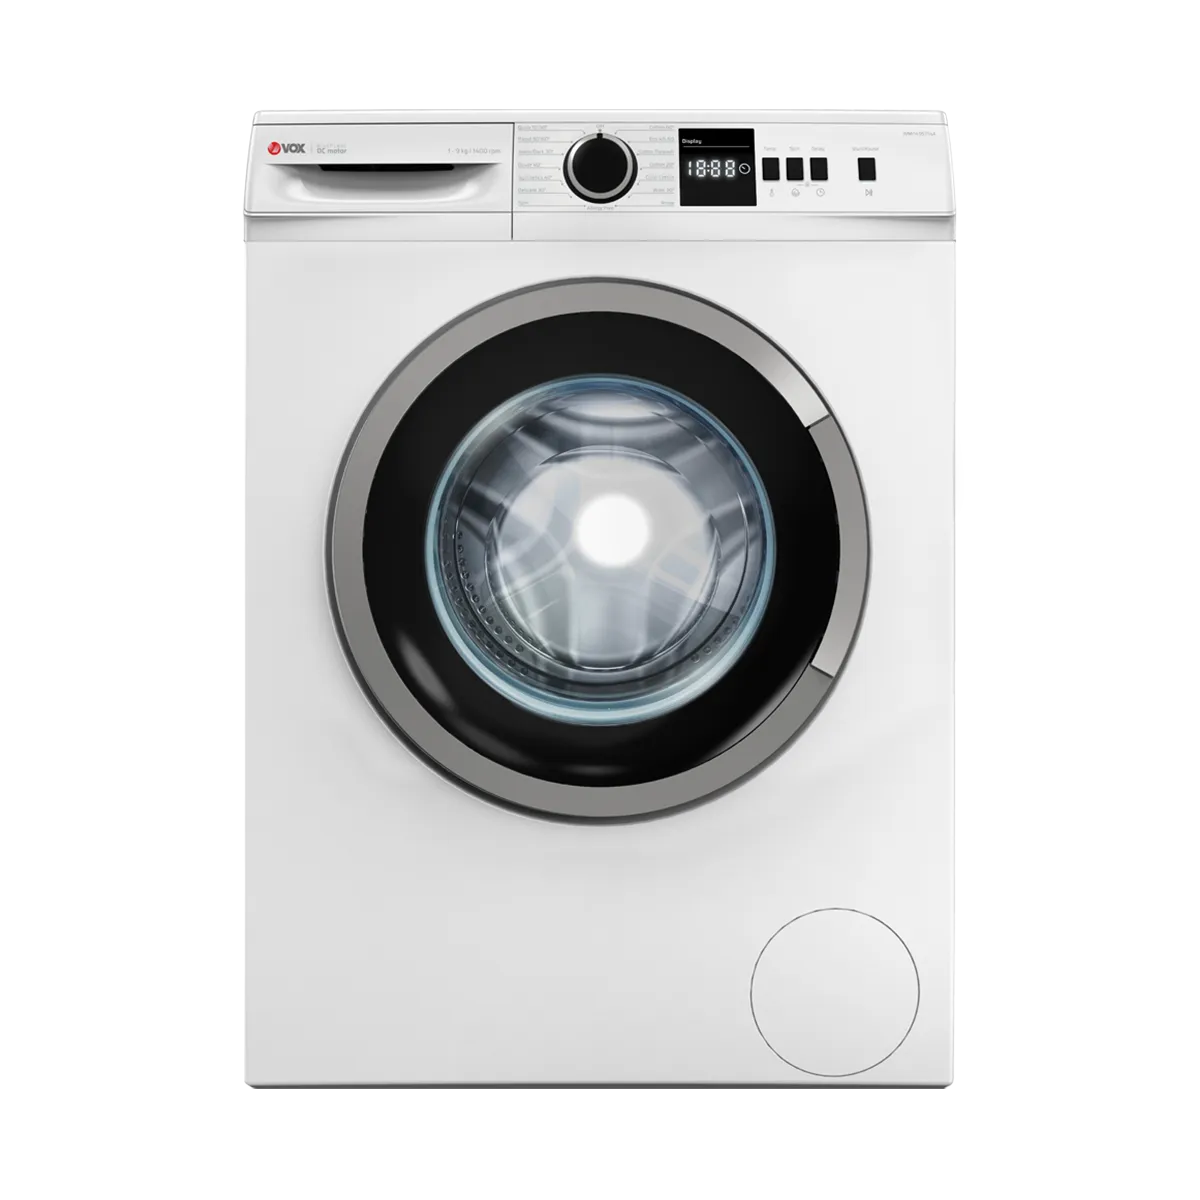 Washing machine WMI1495-T14A 